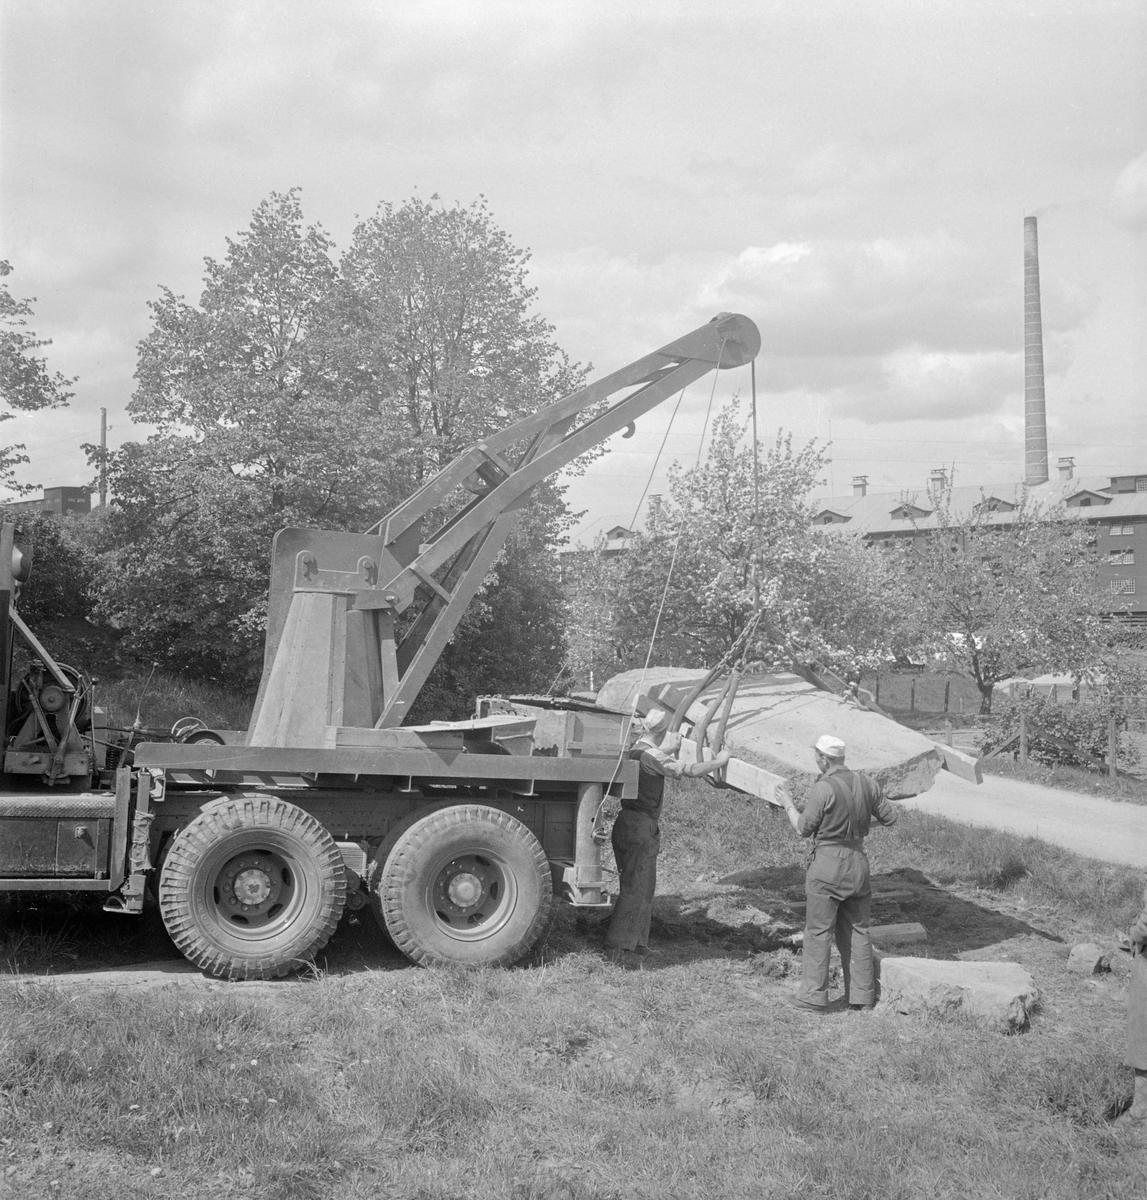 Den 4 maj 1950 gjordes ett runstensfynd på Kallerstads ägor öster om Linköping. Stenen låg i en åkerkant, av allt att döma på ursprungligplats invid en viktig väg som gått över gärdena. Bilden visar bärgningsarbetet vid fyndplatsen.